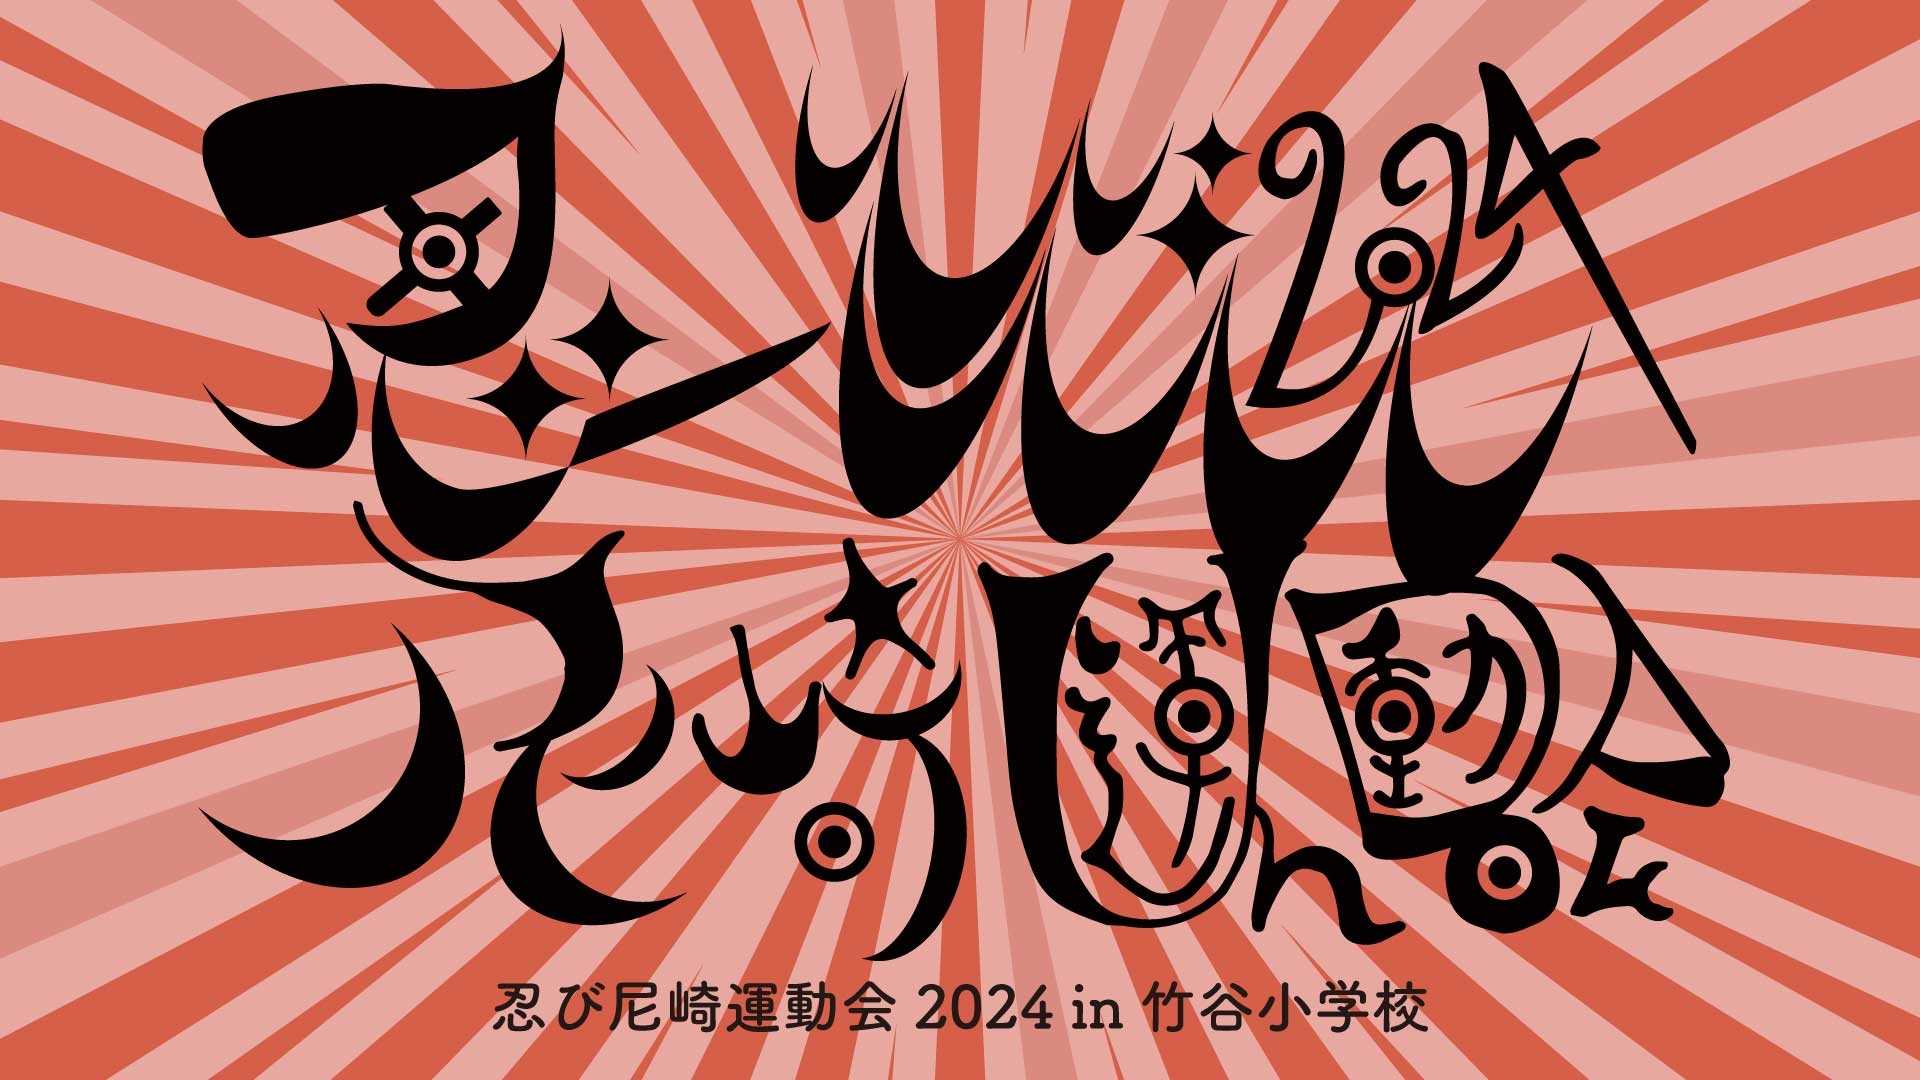 5/12(土)『#忍び尼崎運動会2024』